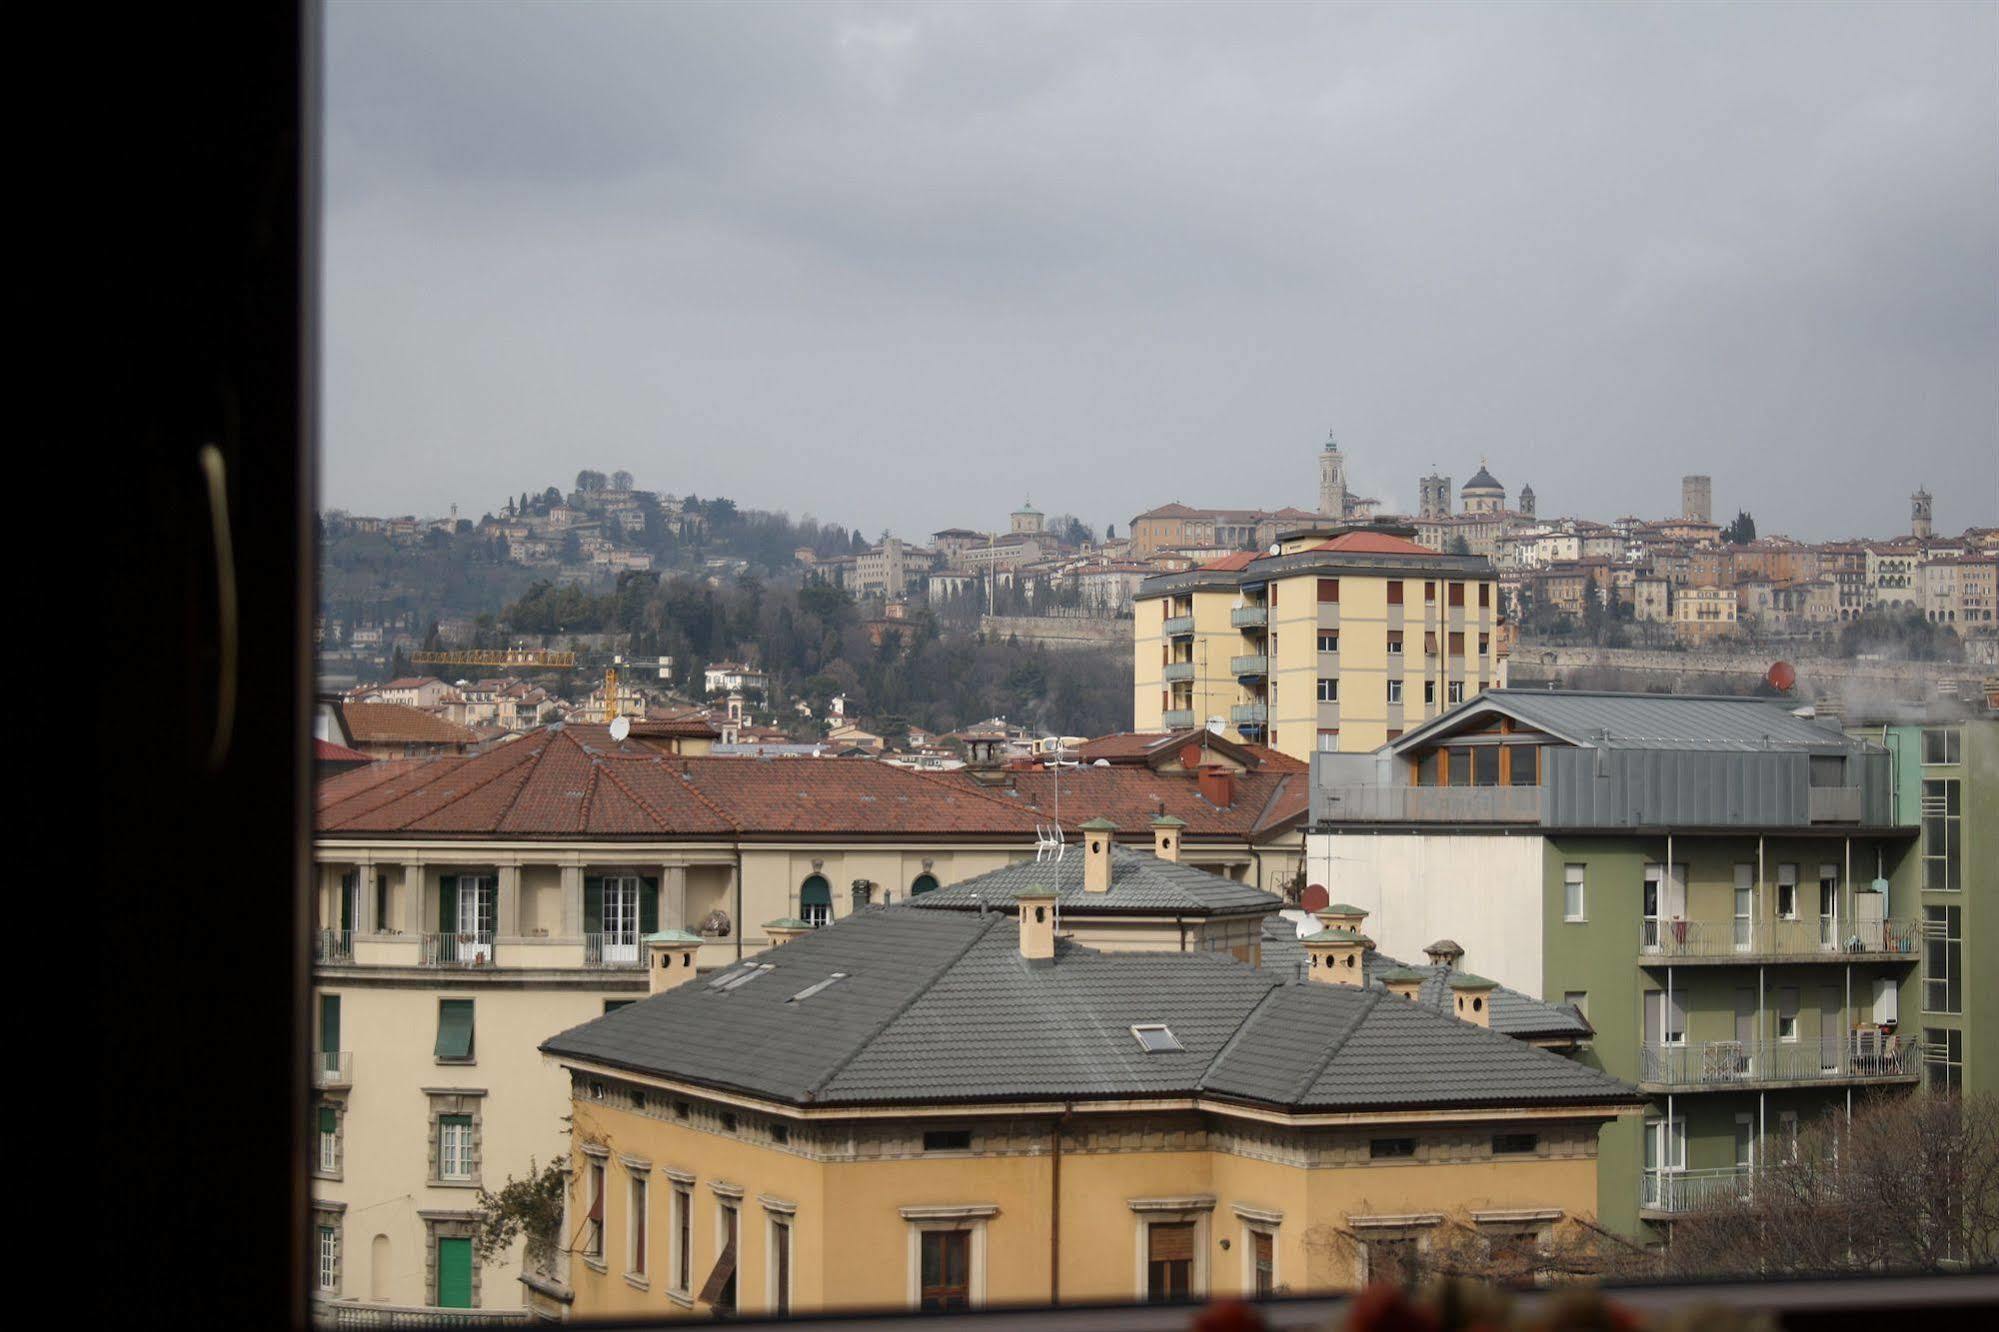 Bergamo Romantica エクステリア 写真